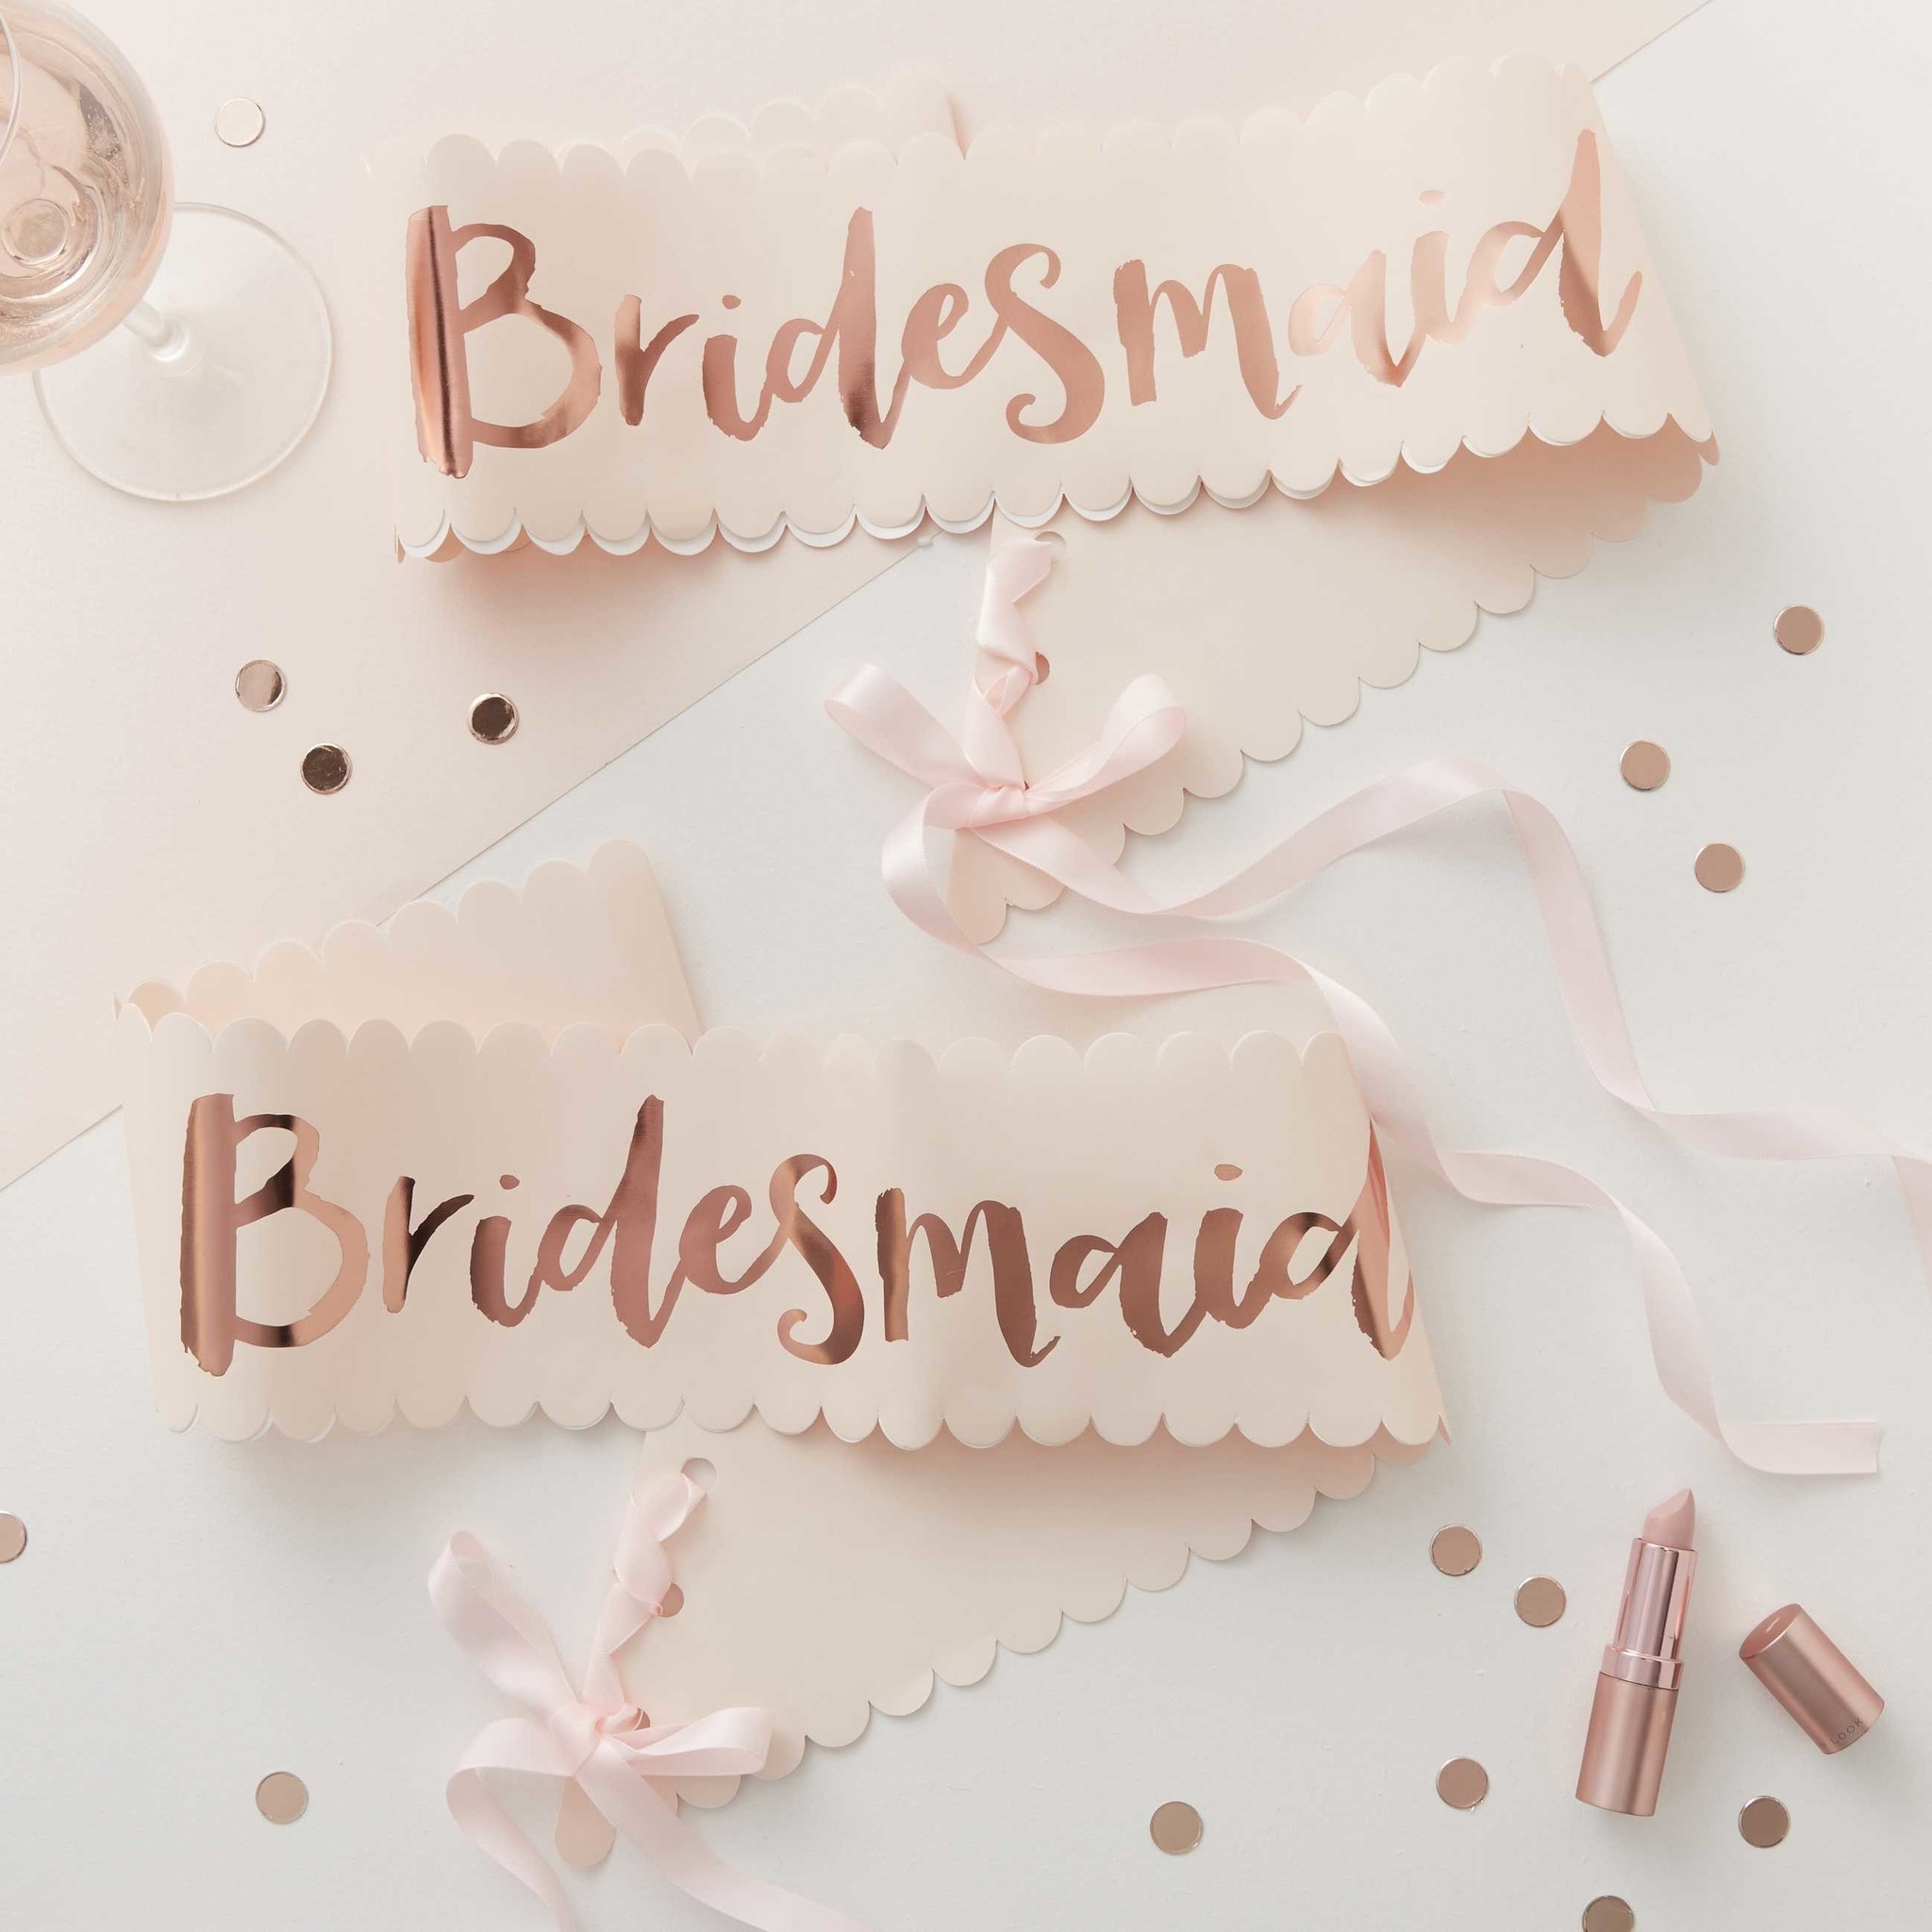 Sjerp Bridesmaid - Team Bride - vrijgezellenfeest versiering - 2stuks-2